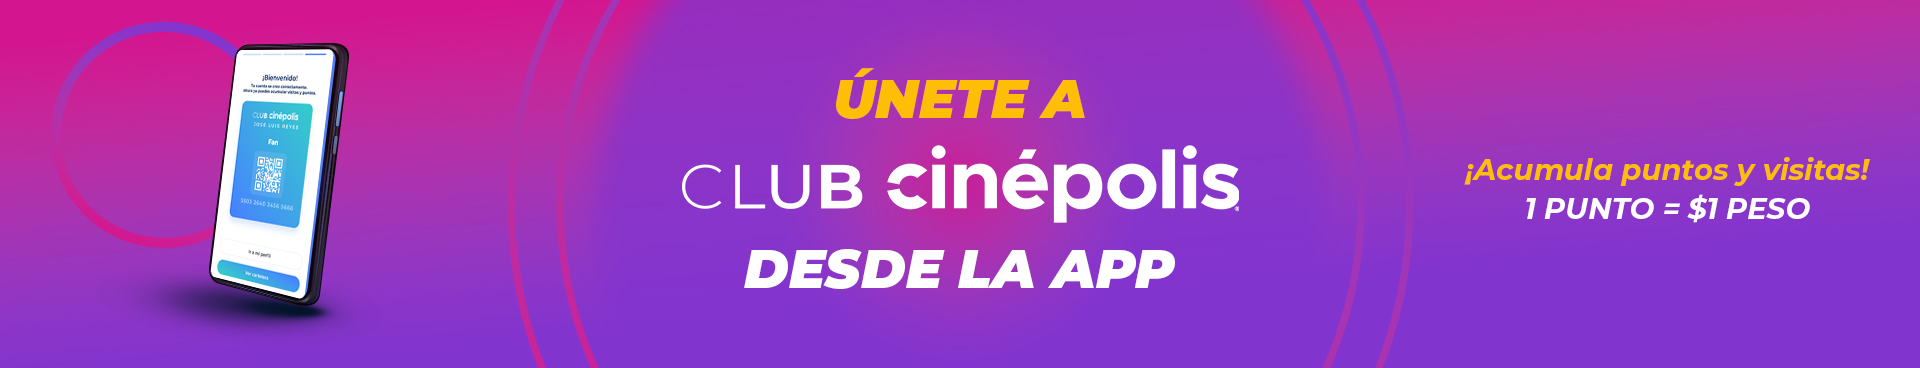 Únete a Club Cinépolis Desde la App